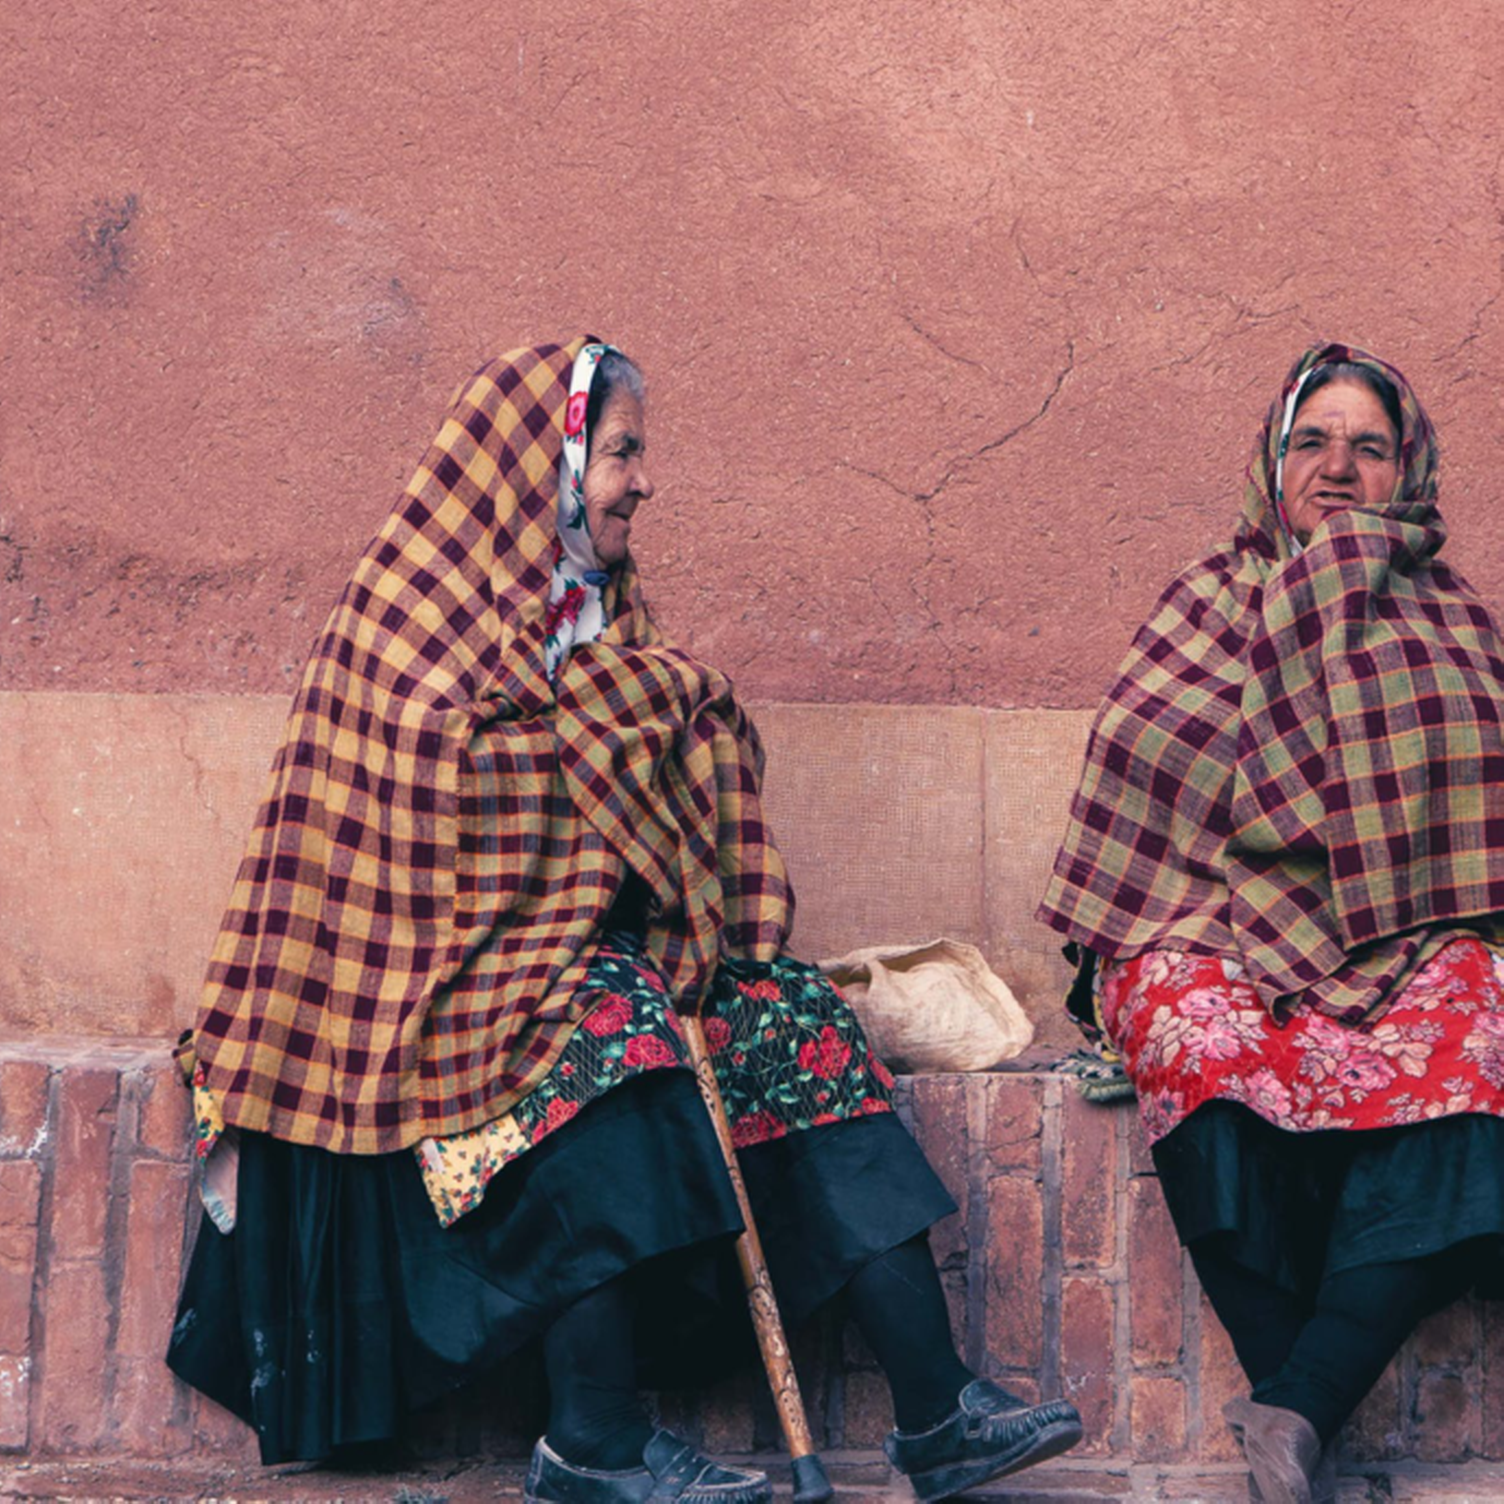 Frauen in Abyaneh